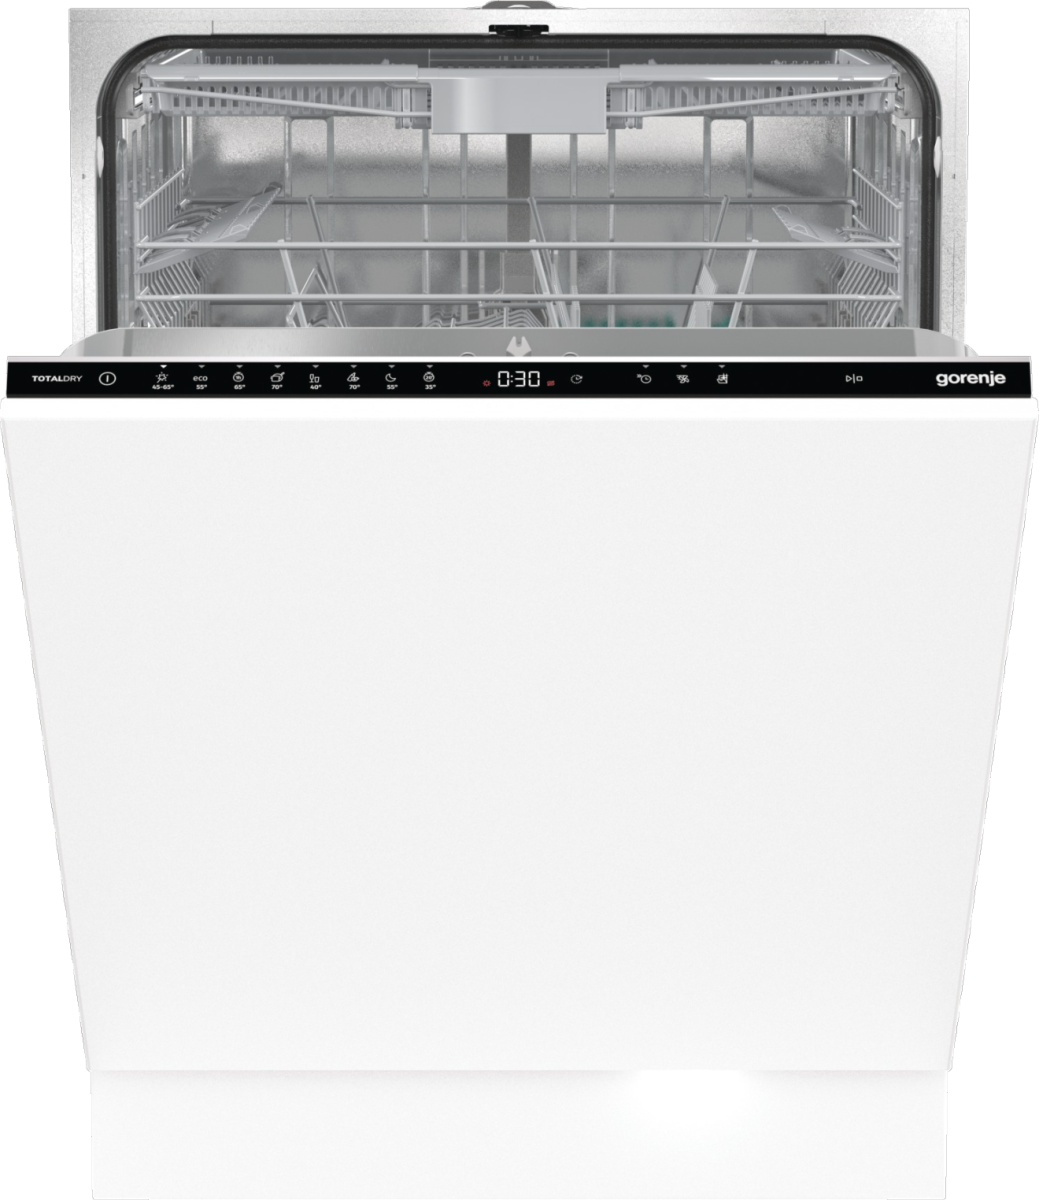 Встраиваемая посудомоечная машина Gorenje GV663D60 встраиваемая посудомоечная машина gorenje gv 561d11